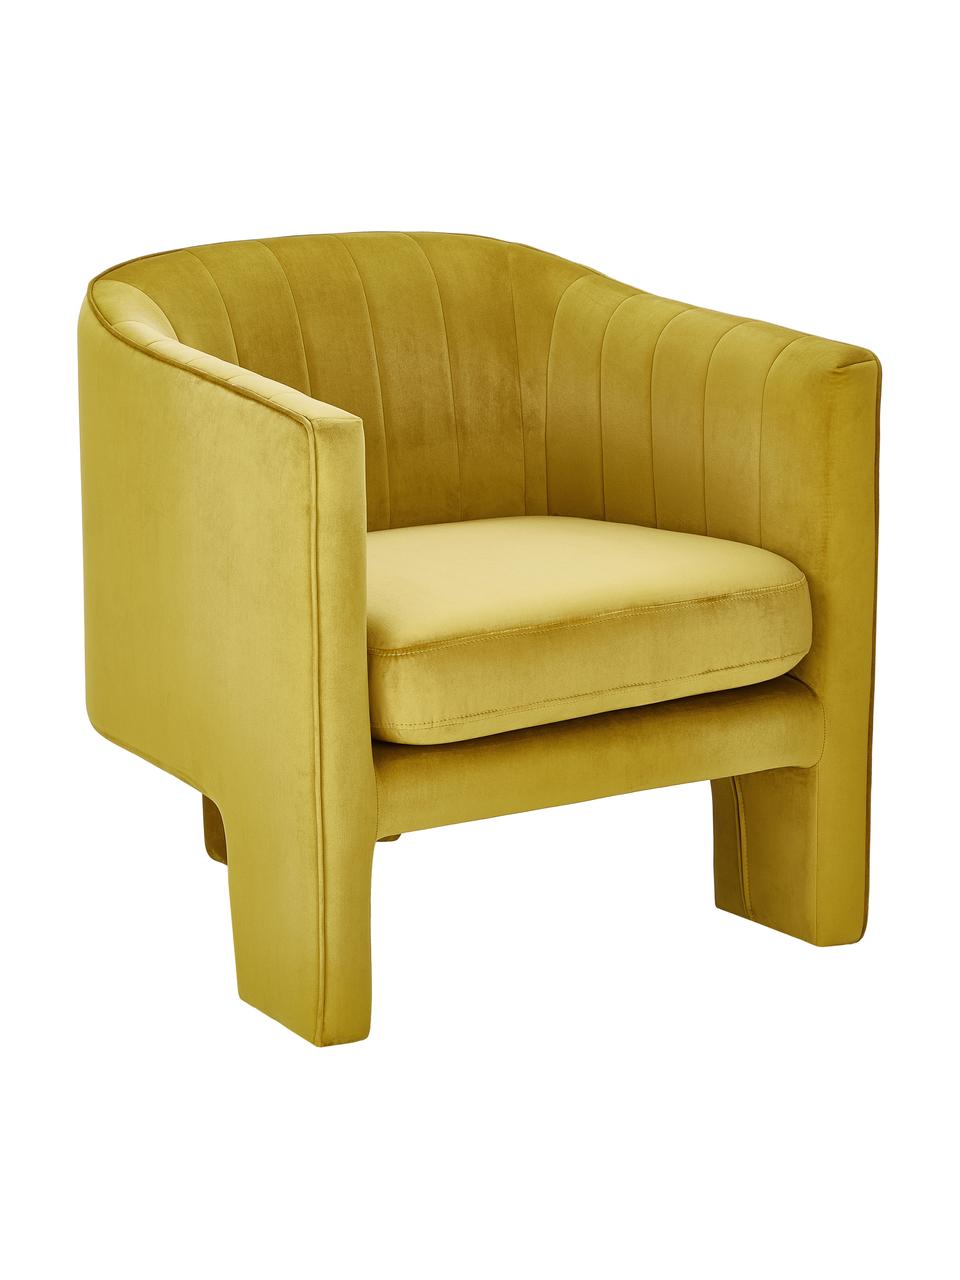 Fluwelen fauteuil Emilie in geel, Bekleding: fluweel (polyester) 50.00, Fluweel okergeel, B 75 x D 76 cm